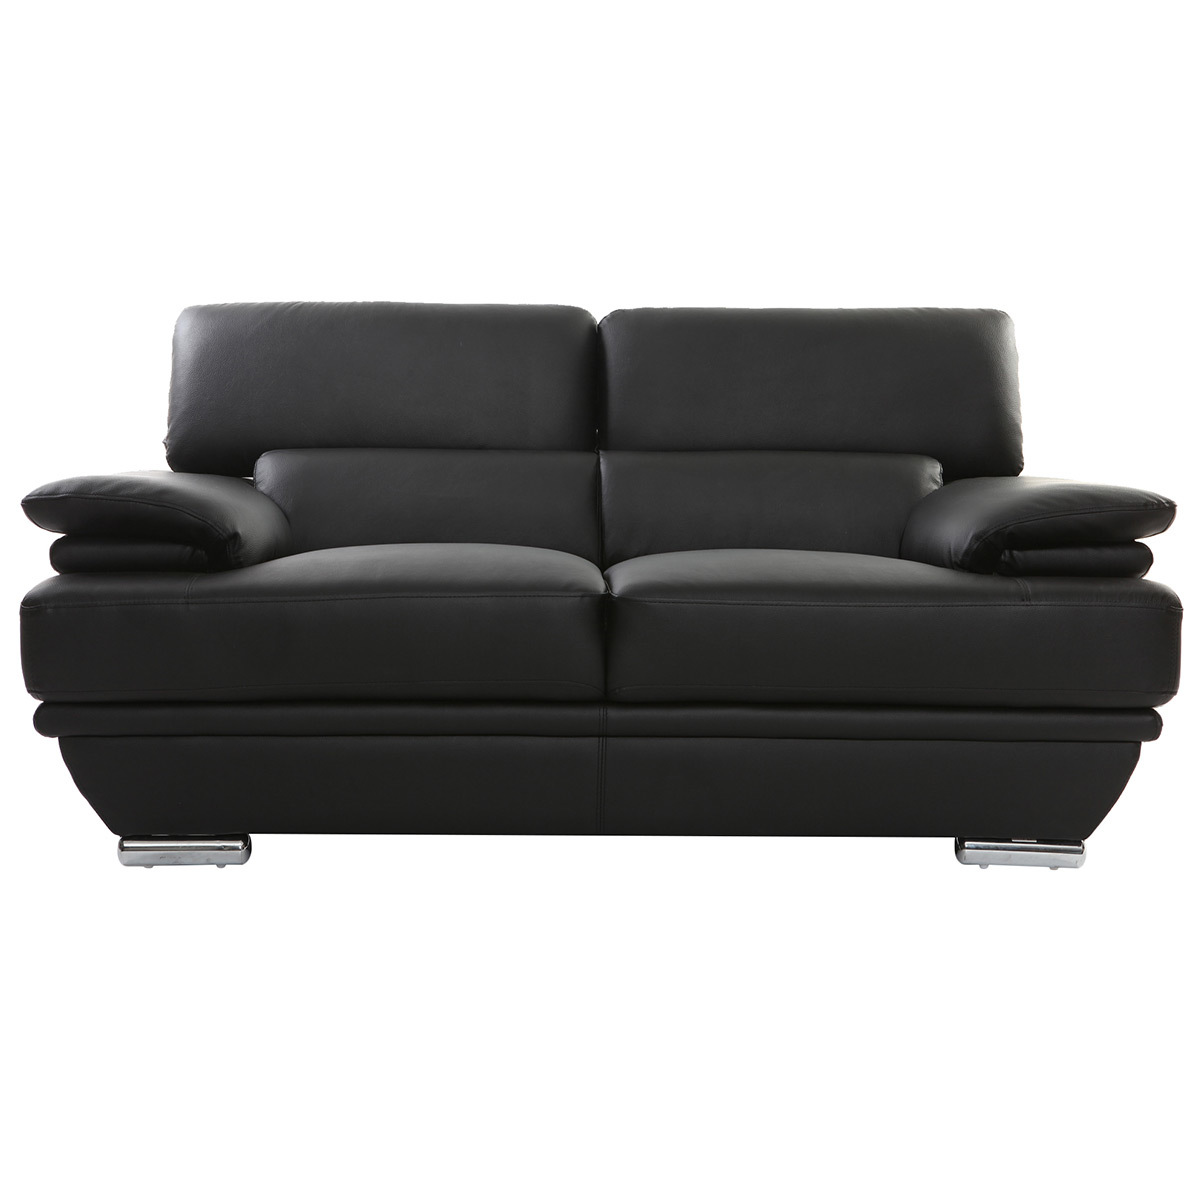 Canapé design avec têtières ajustables 2 places cuir noir et acier chromé EWING vue1